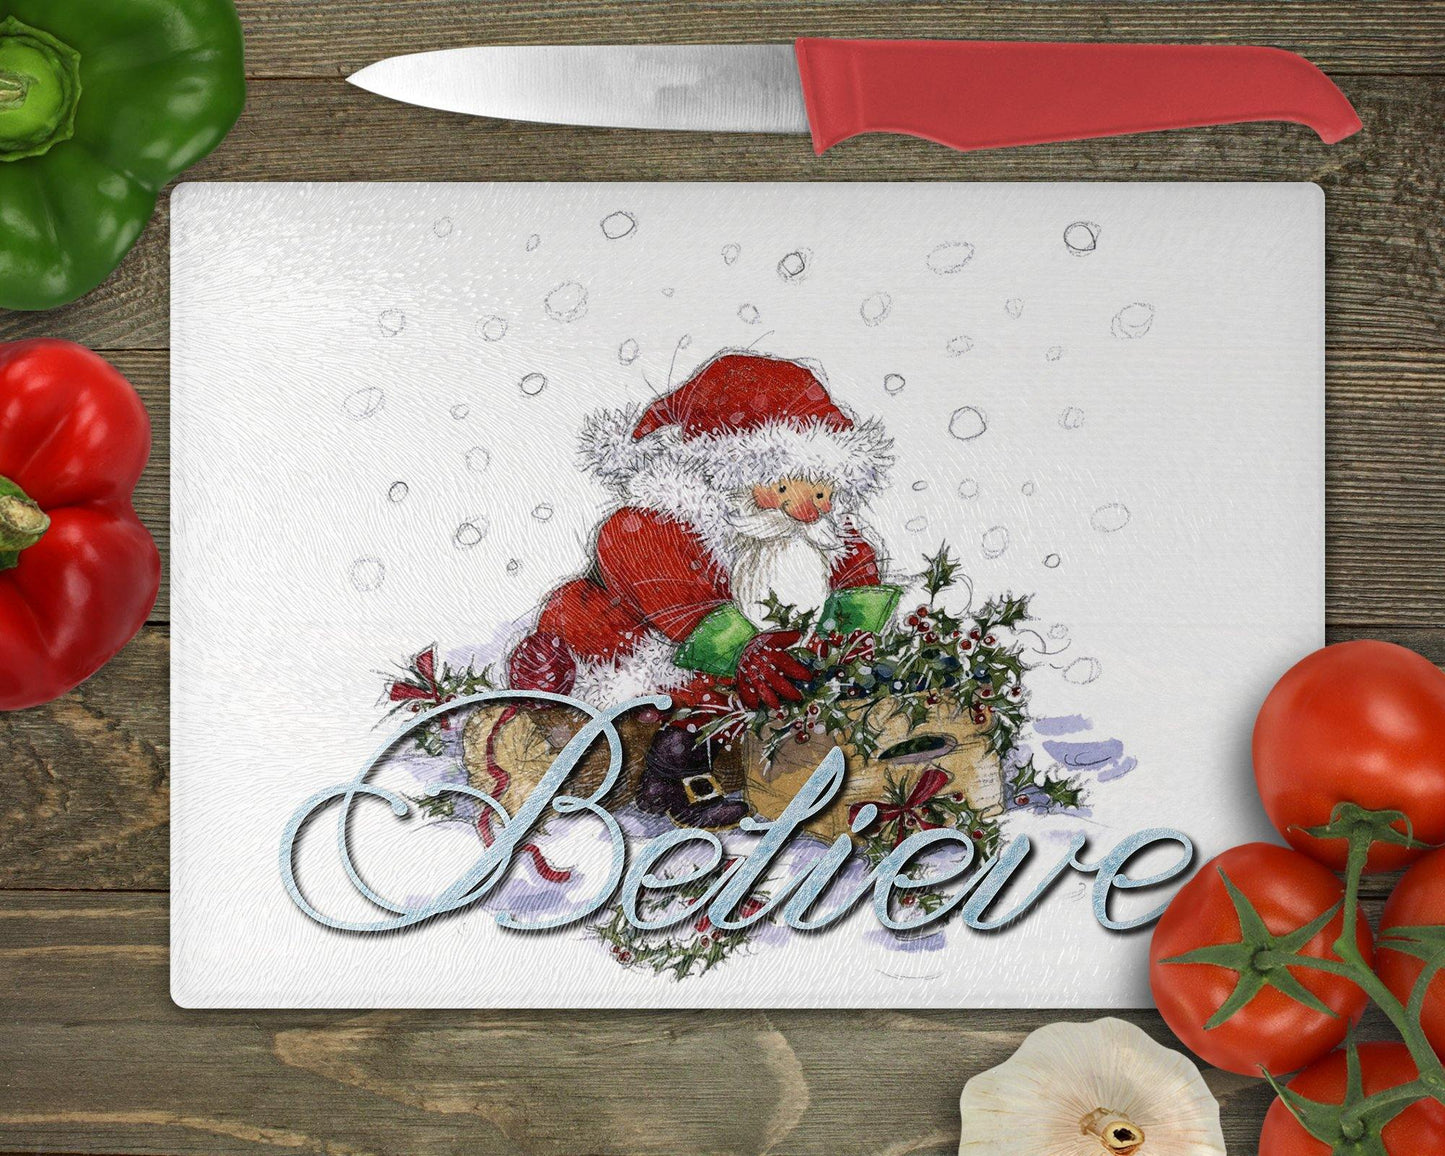 Believe in Santa Cutout Glass Cutting Board - Schoppix Gifts